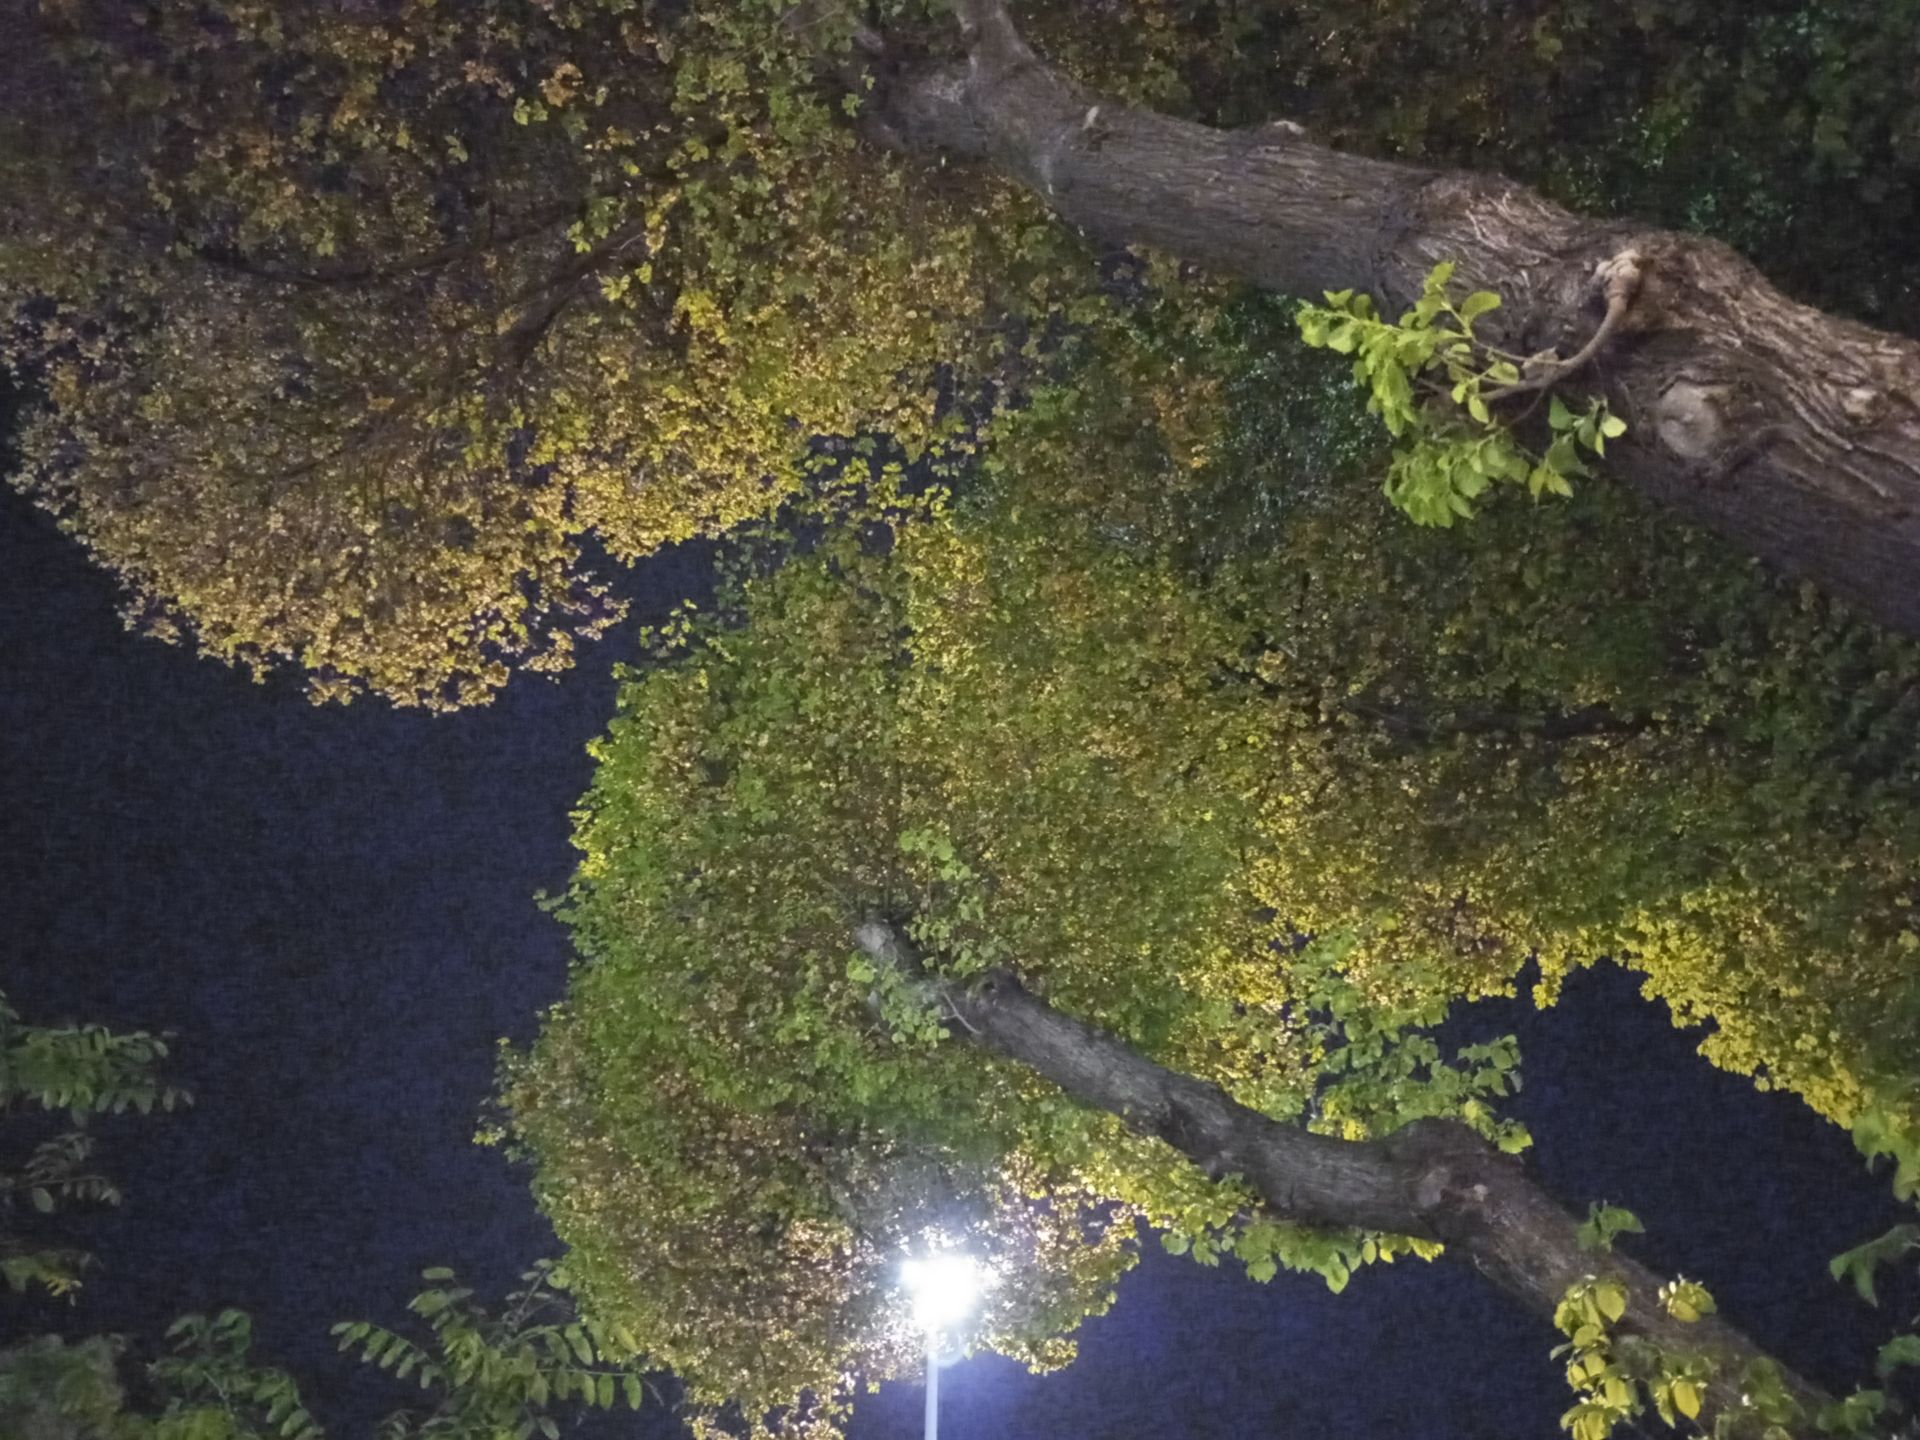 مرجع متخصصين ايران نمونه عكس دوربين اصلي ال جي K51S در شب - شاخ و برگ درختان در پارك